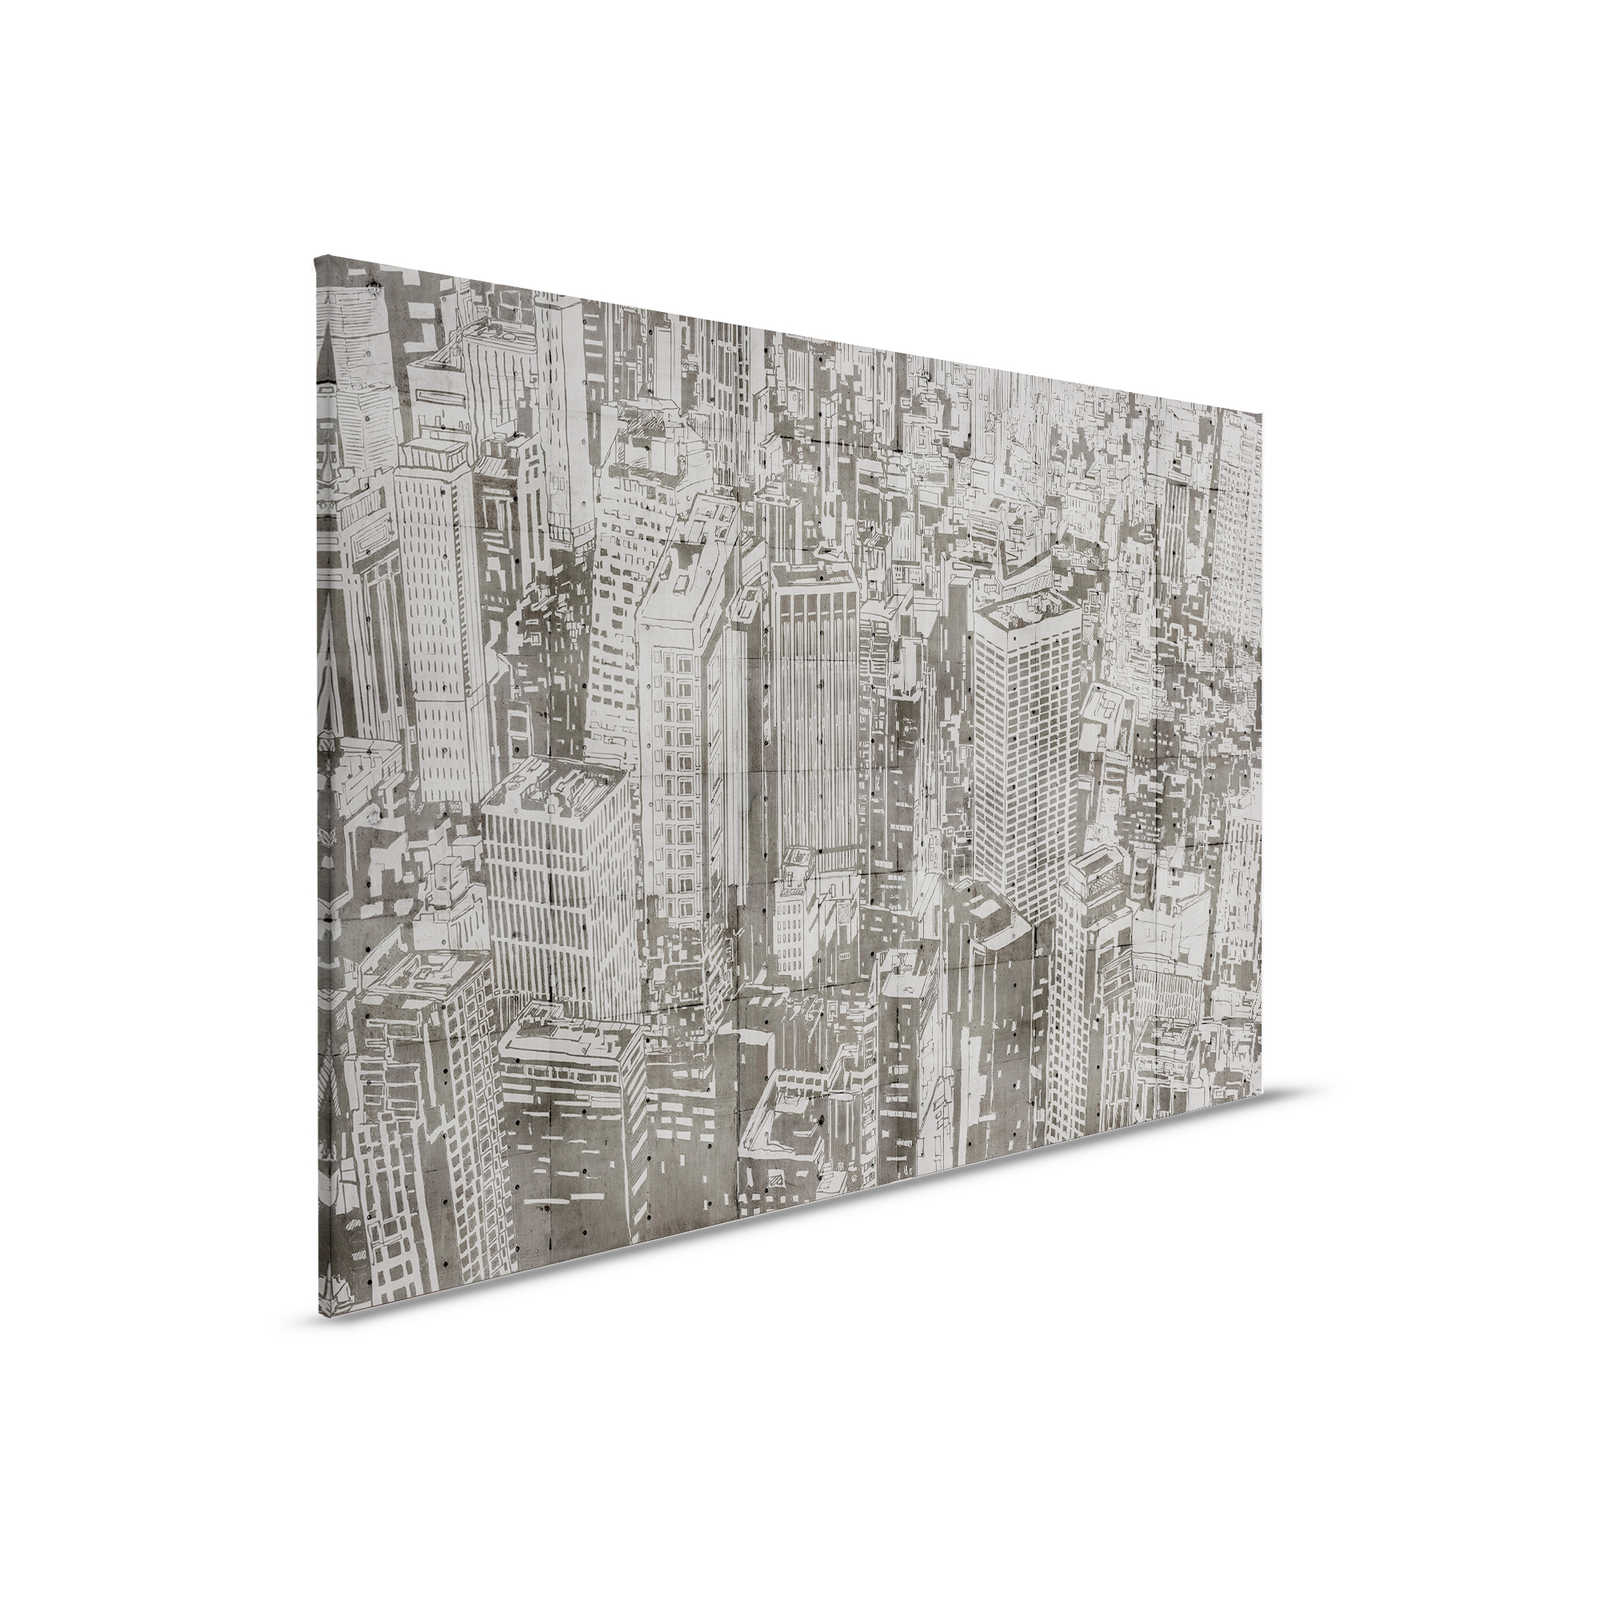 Downtown 2 - Estructura de hormigón Pintura sobre lienzo Aspecto Nueva York - 0,90 m x 0,60 m
